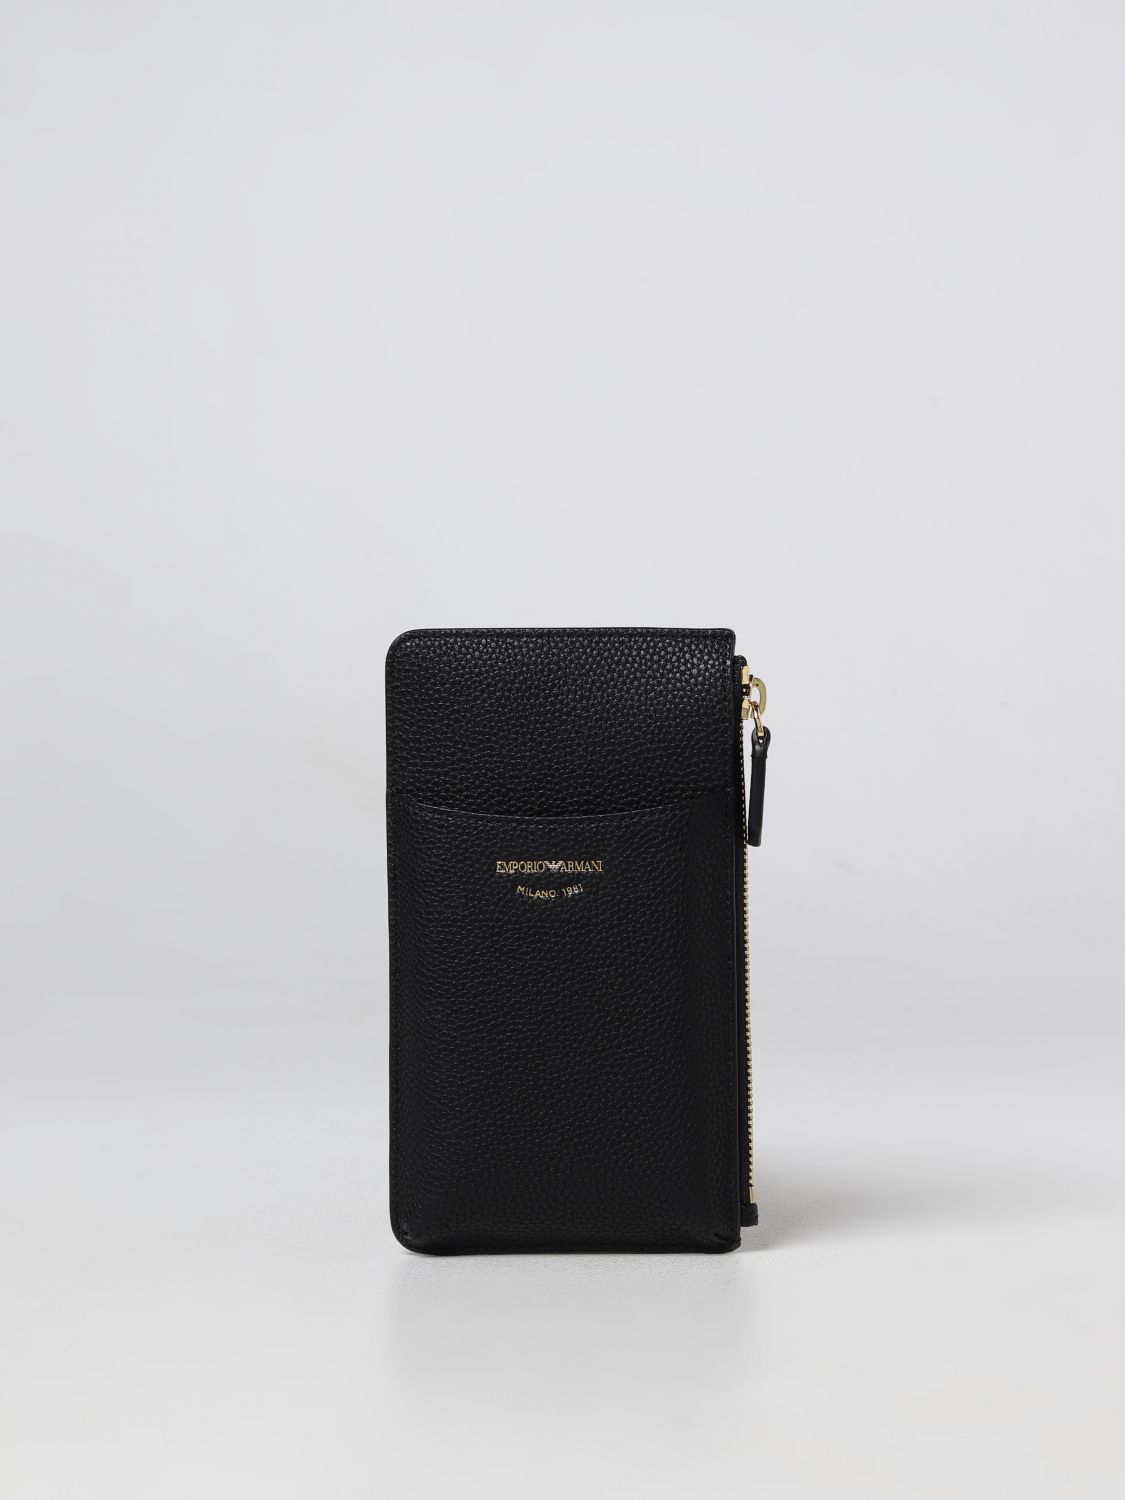 EMPORIO ARMANI: wallet for woman - Black | Emporio Armani wallet ...